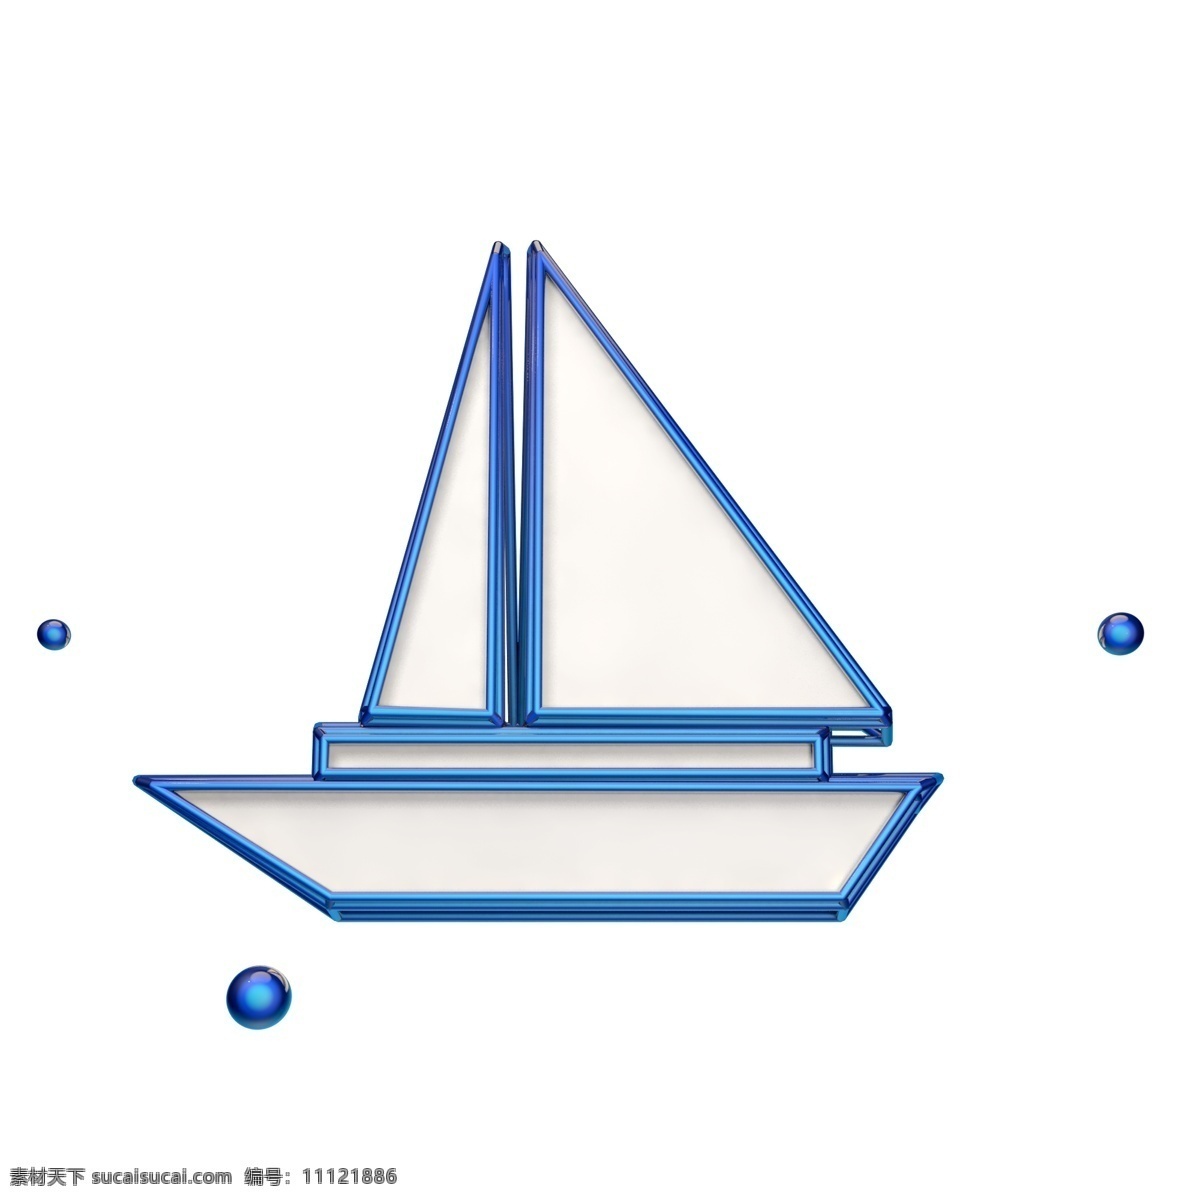 立体帆船图标 立体 蓝色 帆船